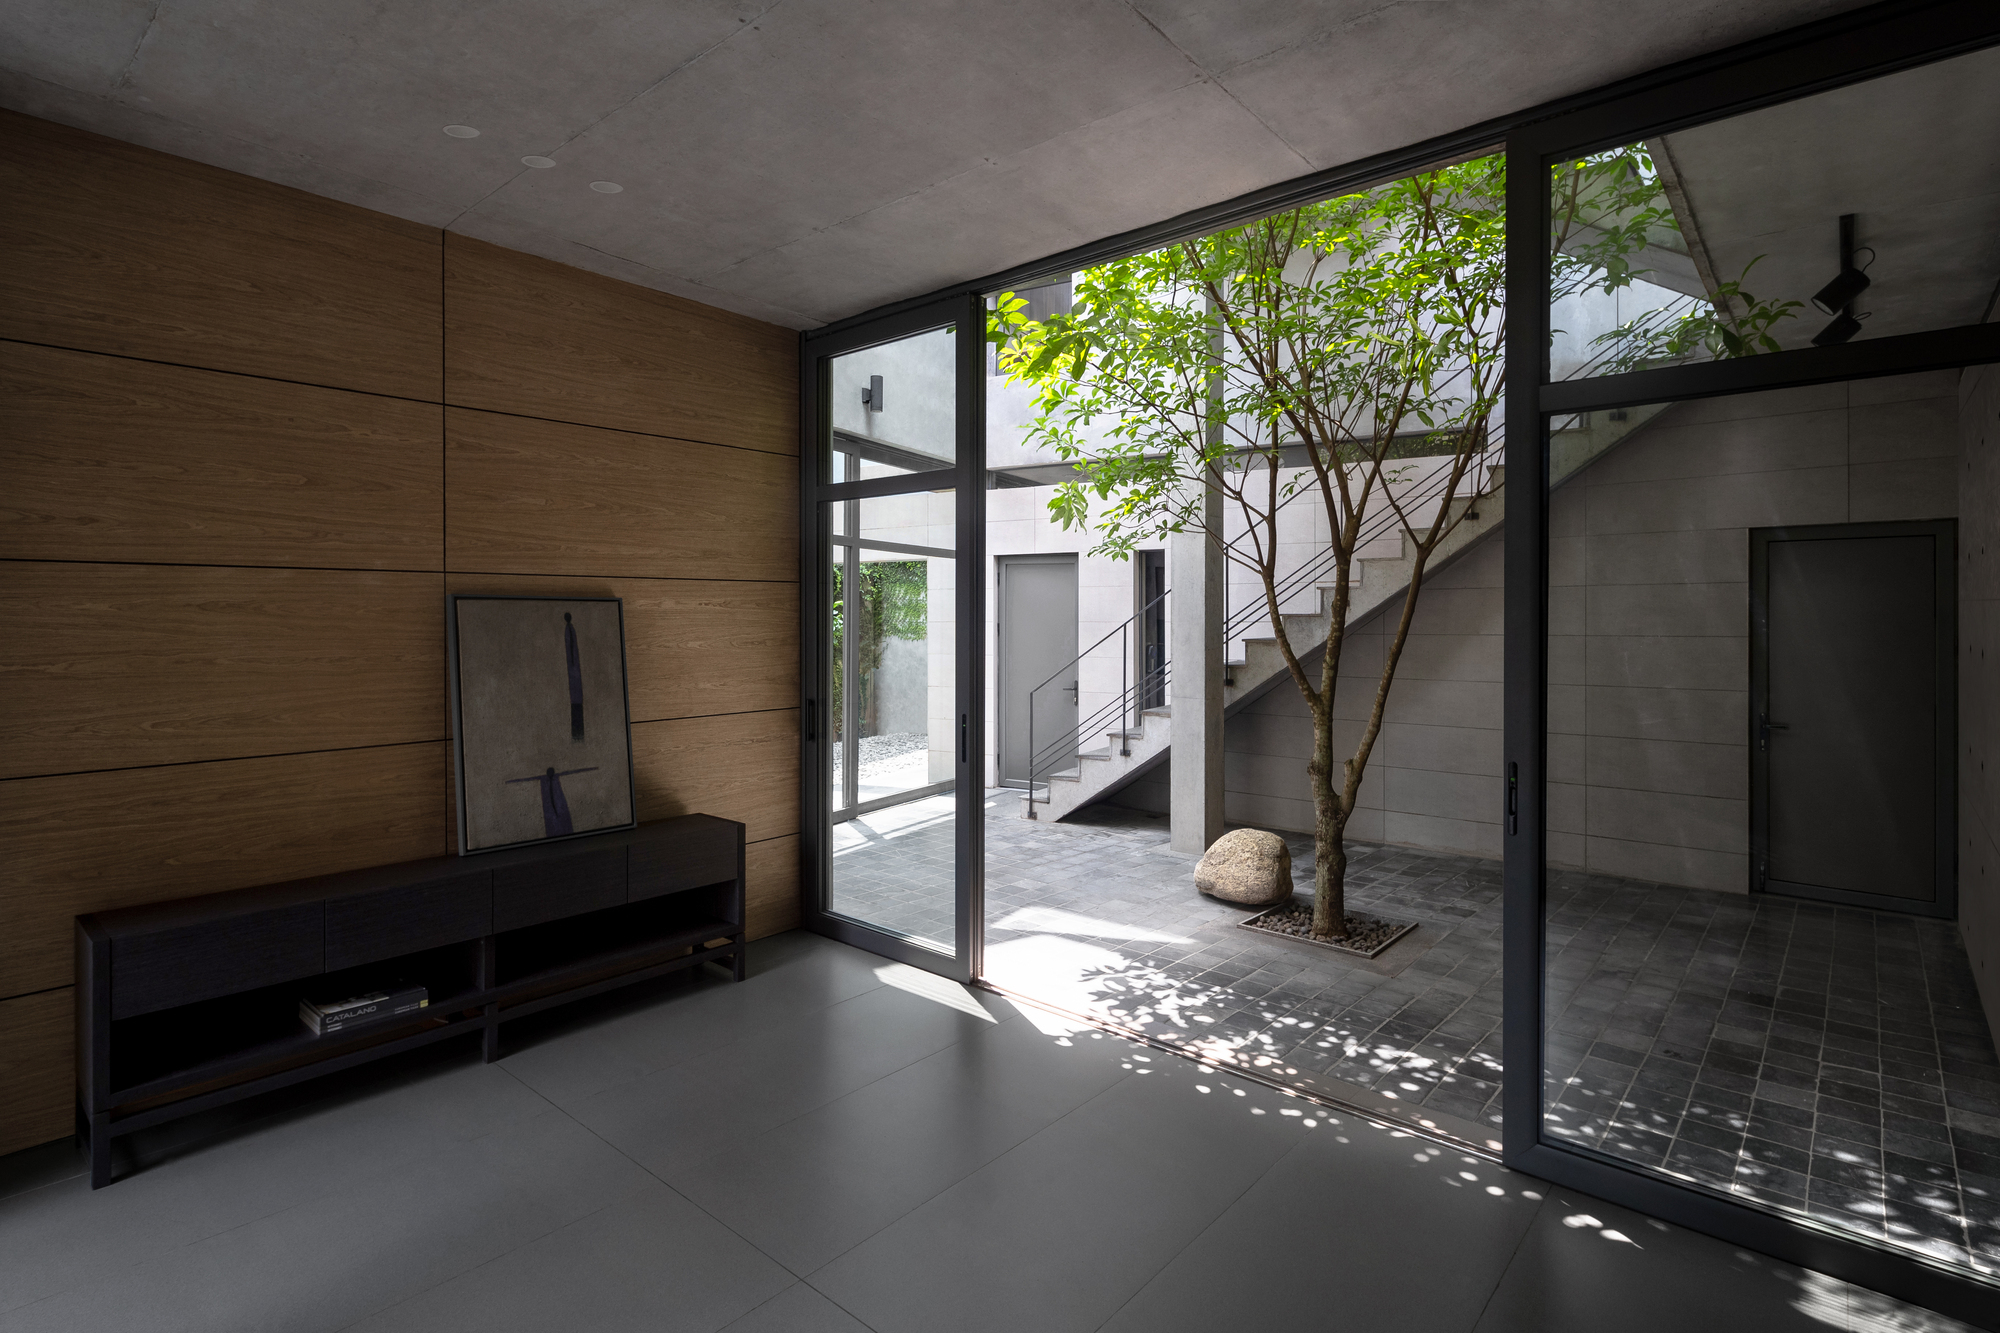 图片[3]|Trang之家 / Nguyen Thanh Trung Architects|ART-Arrakis | 建筑室内设计的创新与灵感